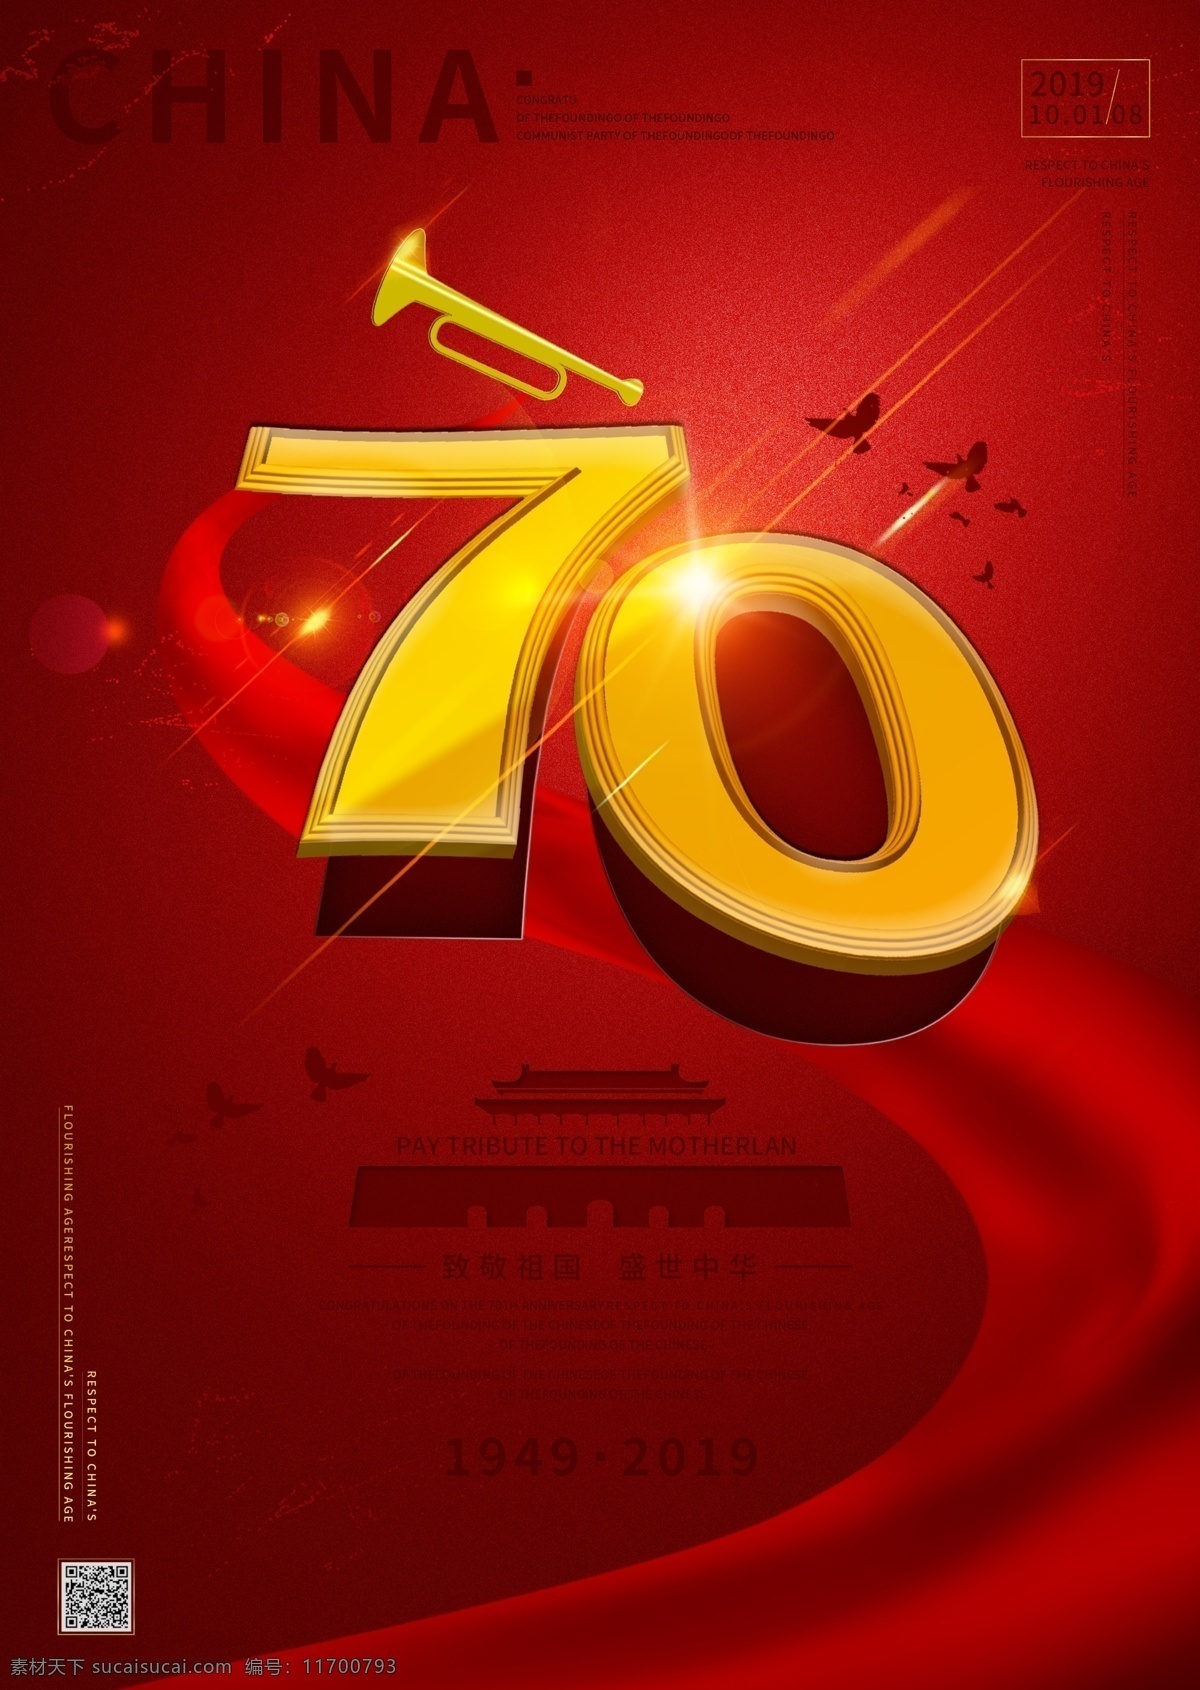 原创 新中国 成立 周年 大气 海报 70周年 红色背景 中国风 天安门 立体 建党 节日海报